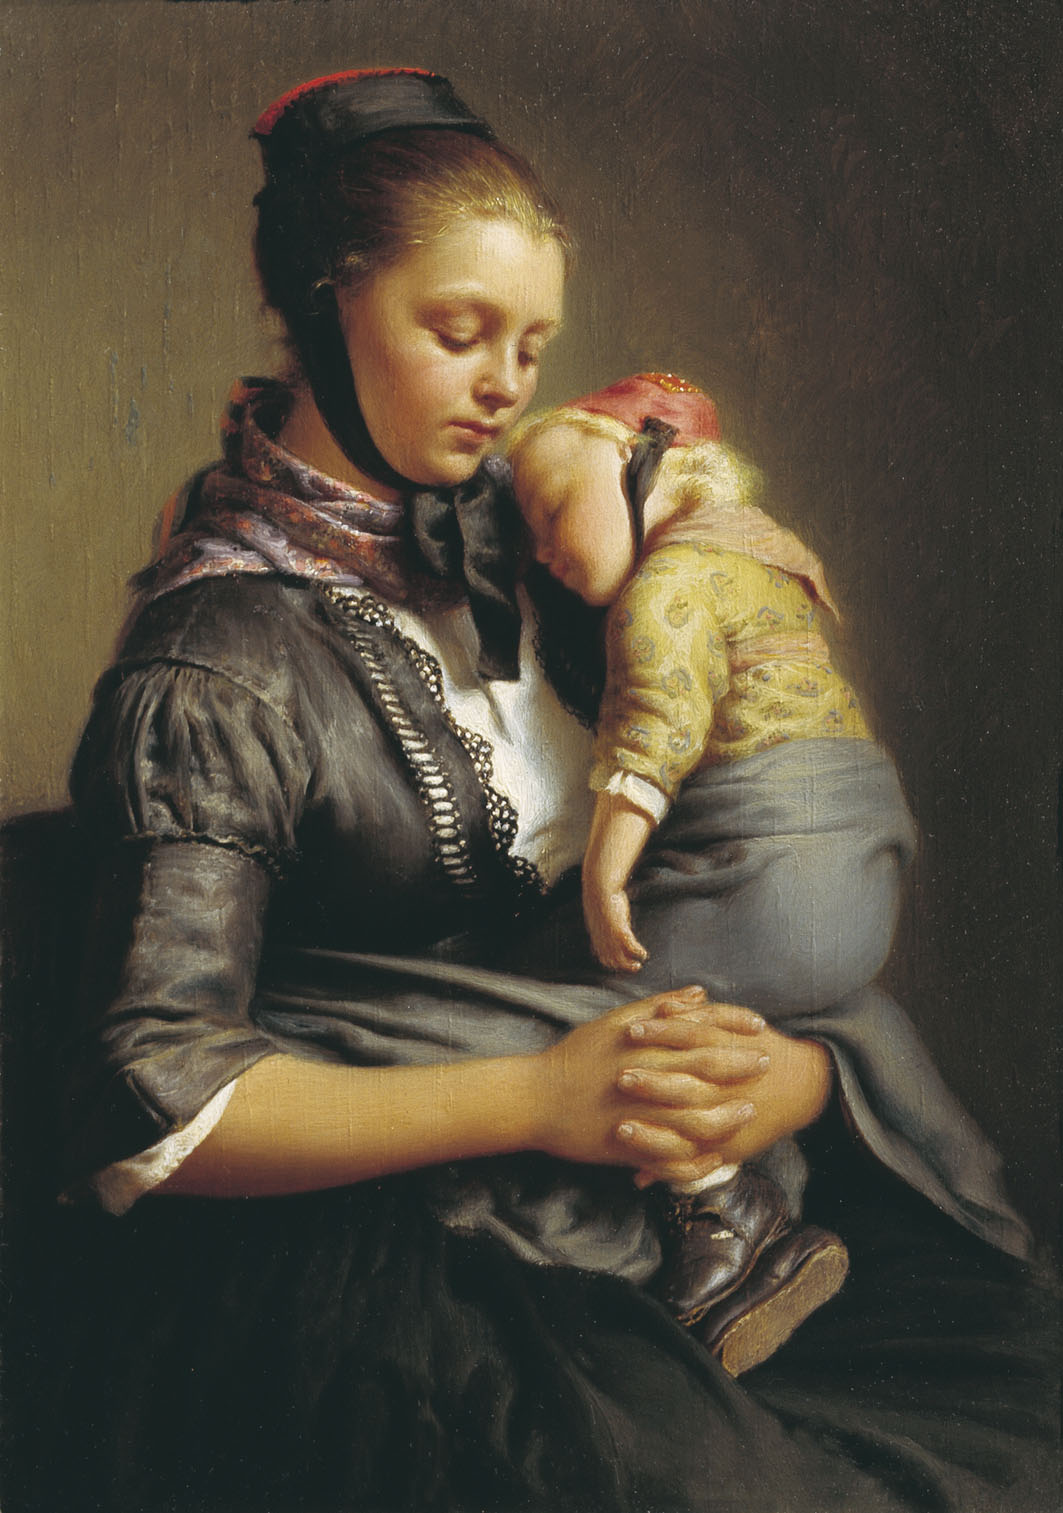 Рейтерн. Крестьянка из Вилленсхаузена с уснувшим ребенком на руках. 1843